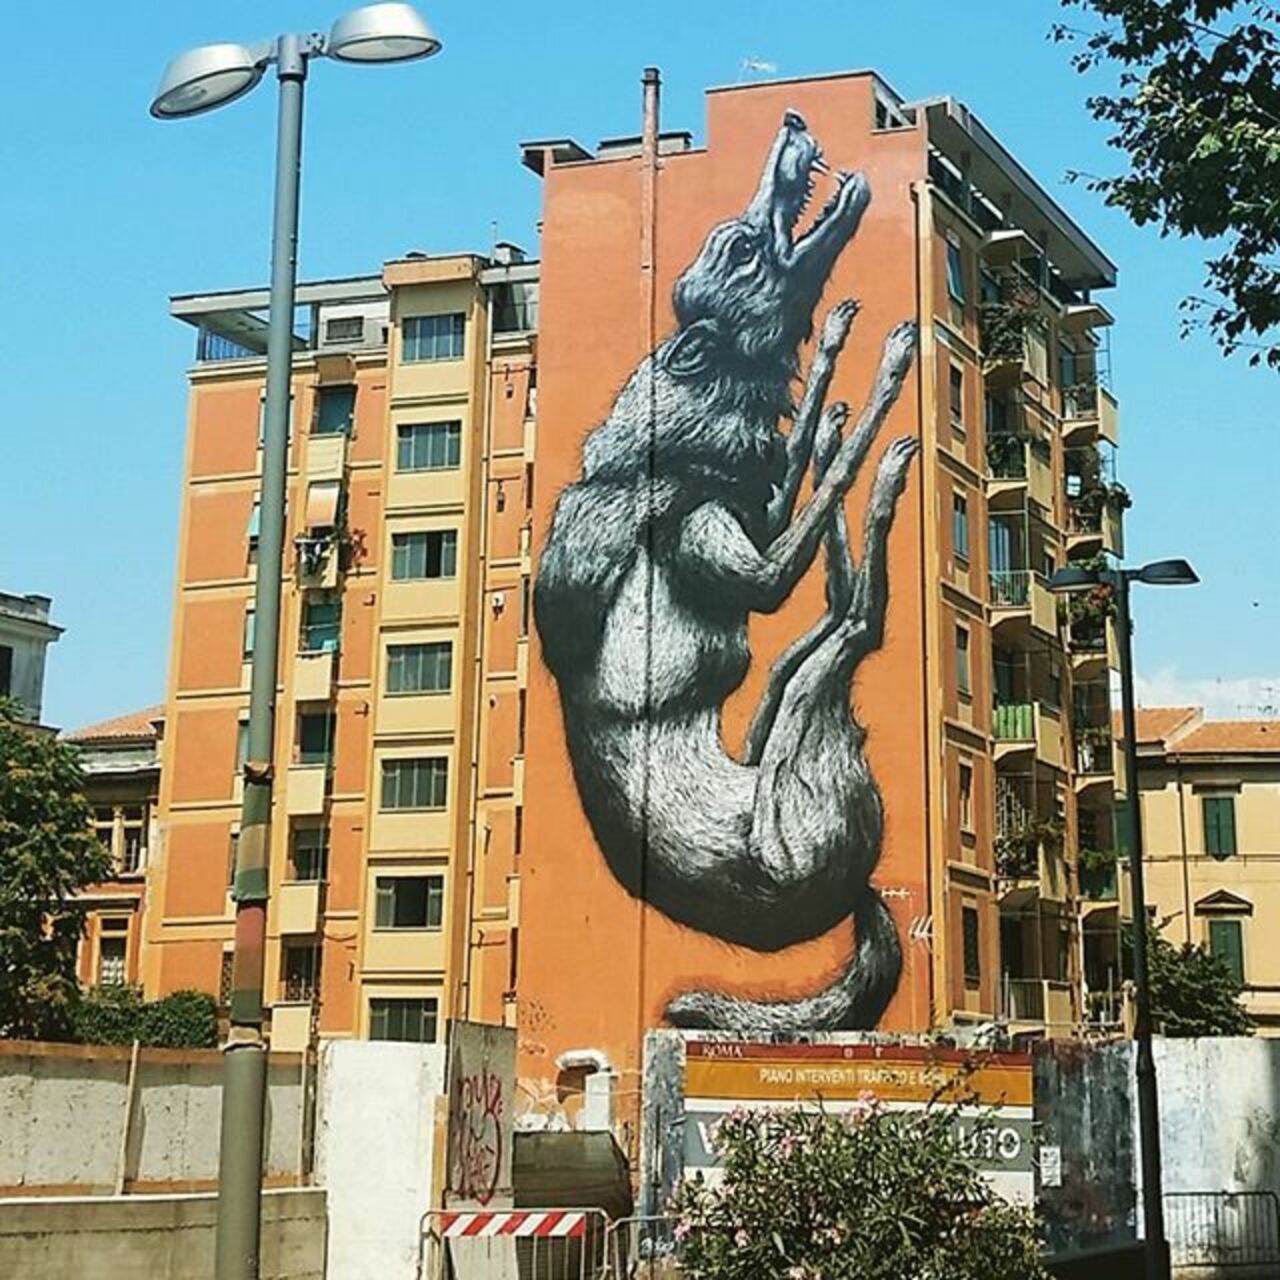 Vertical Wolf by ROA#streetart #mural #graffiti #art https://t.co/GIlWeJvEbE